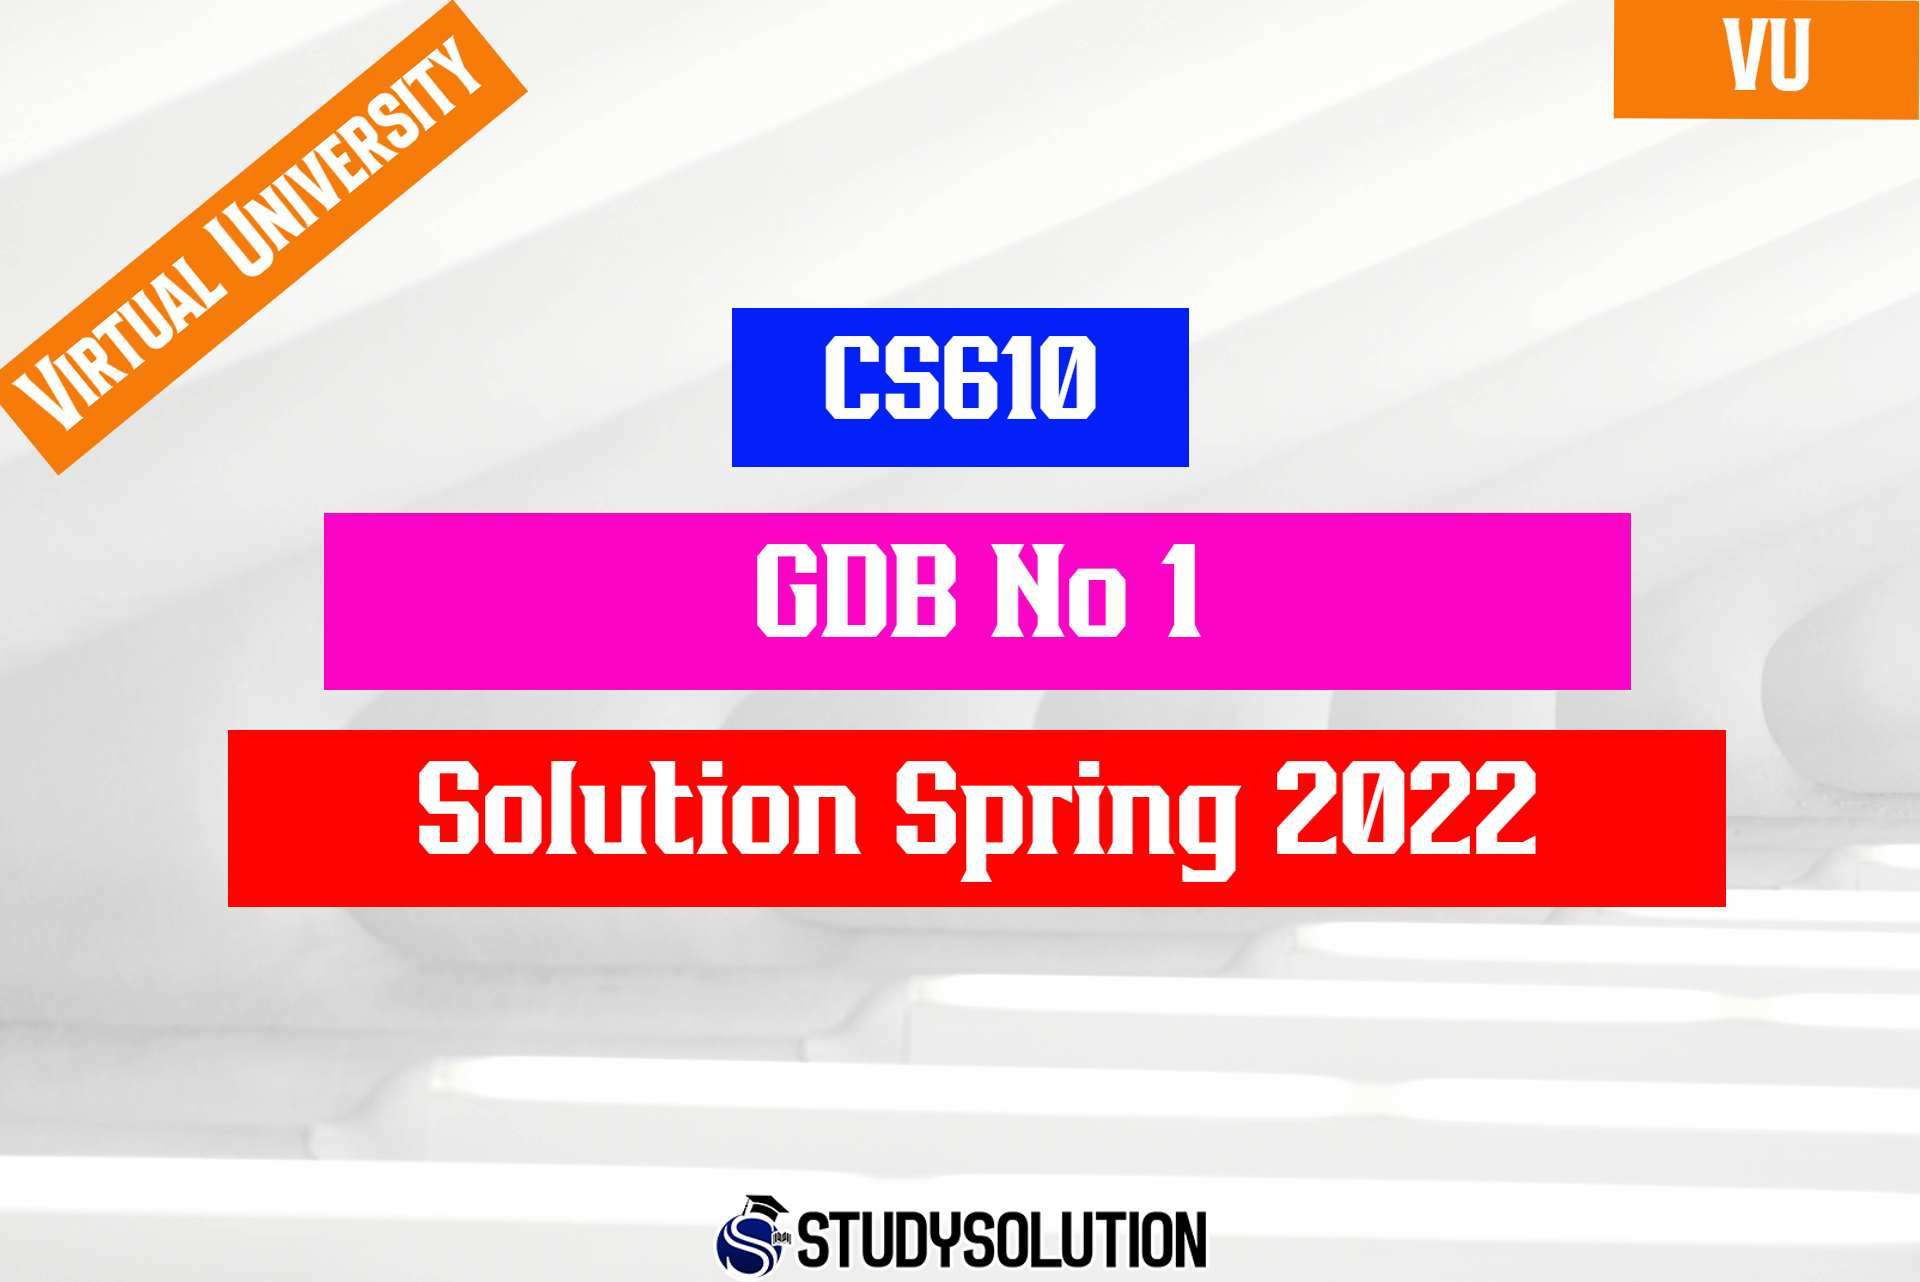 CS610 GDB No1 Solution Spring 2022